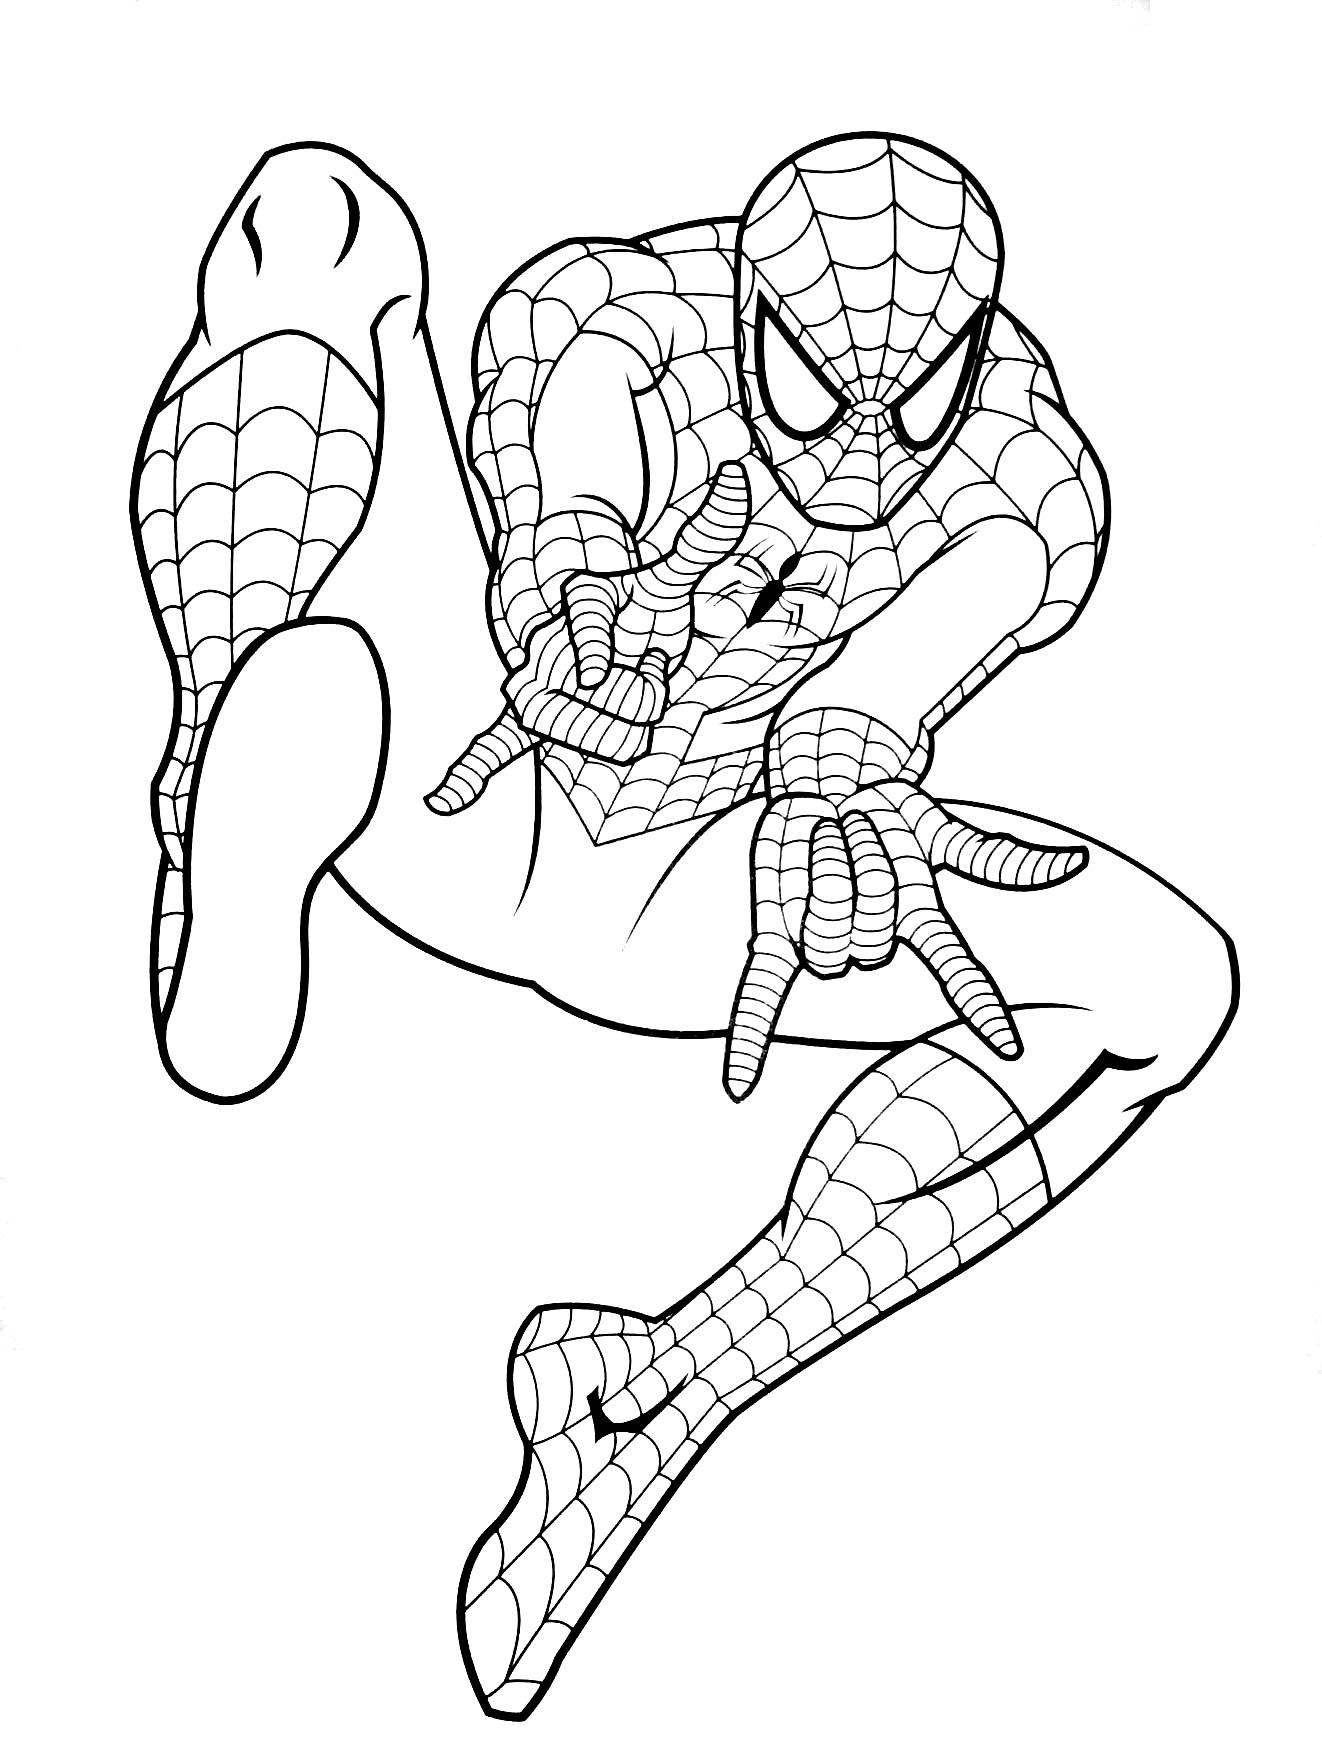 Spiderman gratuit 6 - Coloriage Spiderman - Coloriages ...